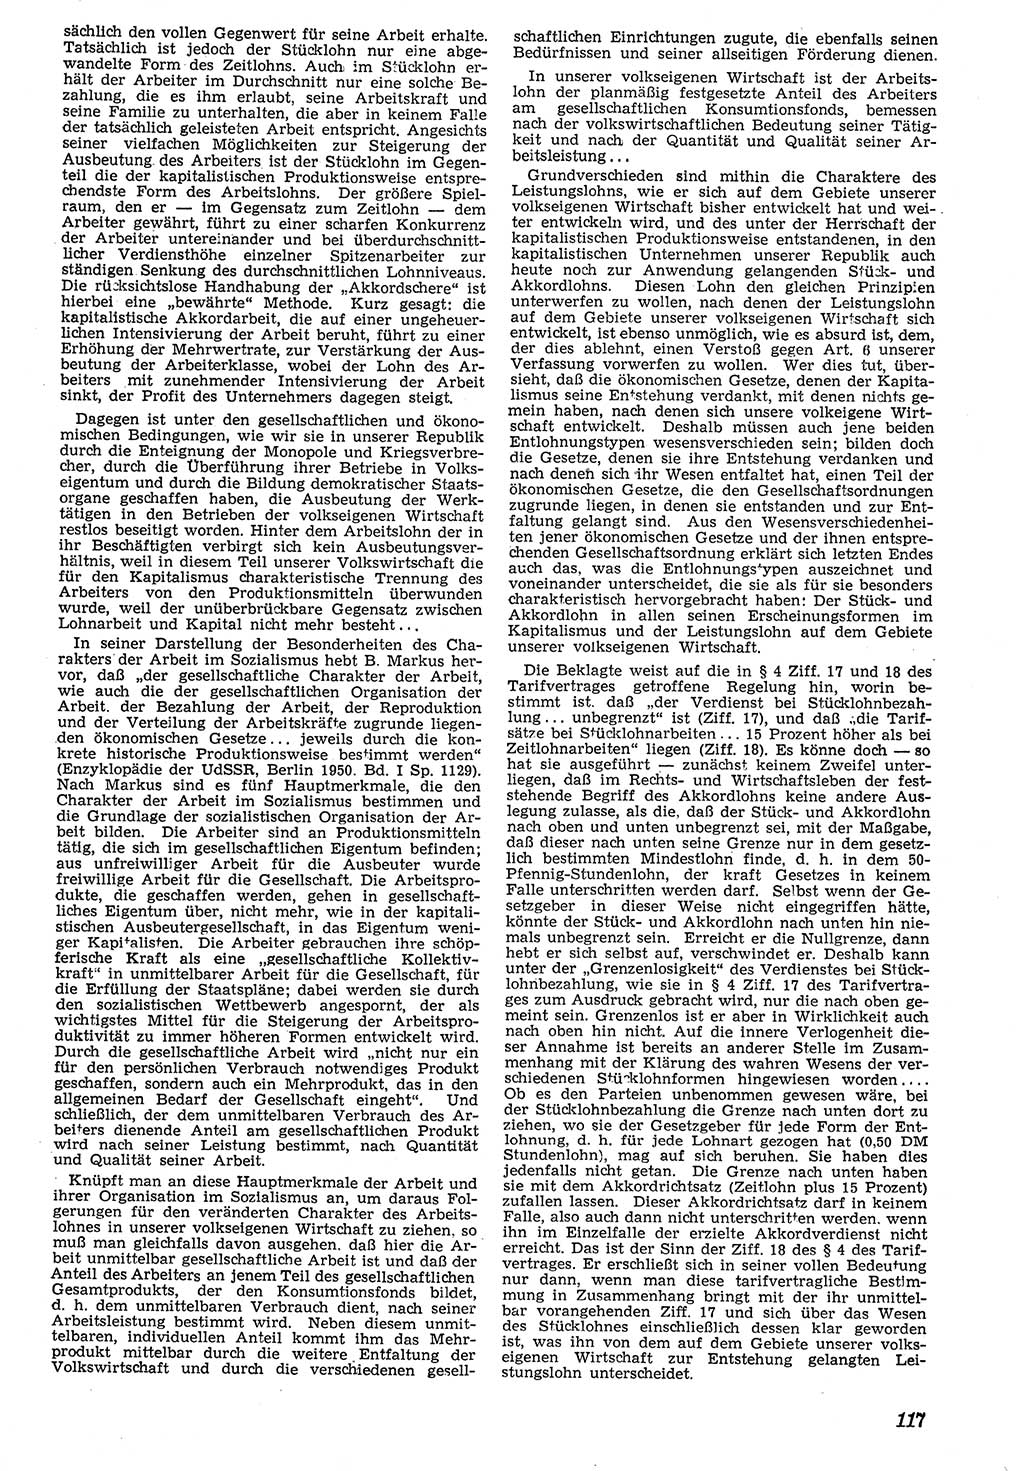 Neue Justiz (NJ), Zeitschrift für Recht und Rechtswissenschaft [Deutsche Demokratische Republik (DDR)], 7. Jahrgang 1953, Seite 117 (NJ DDR 1953, S. 117)